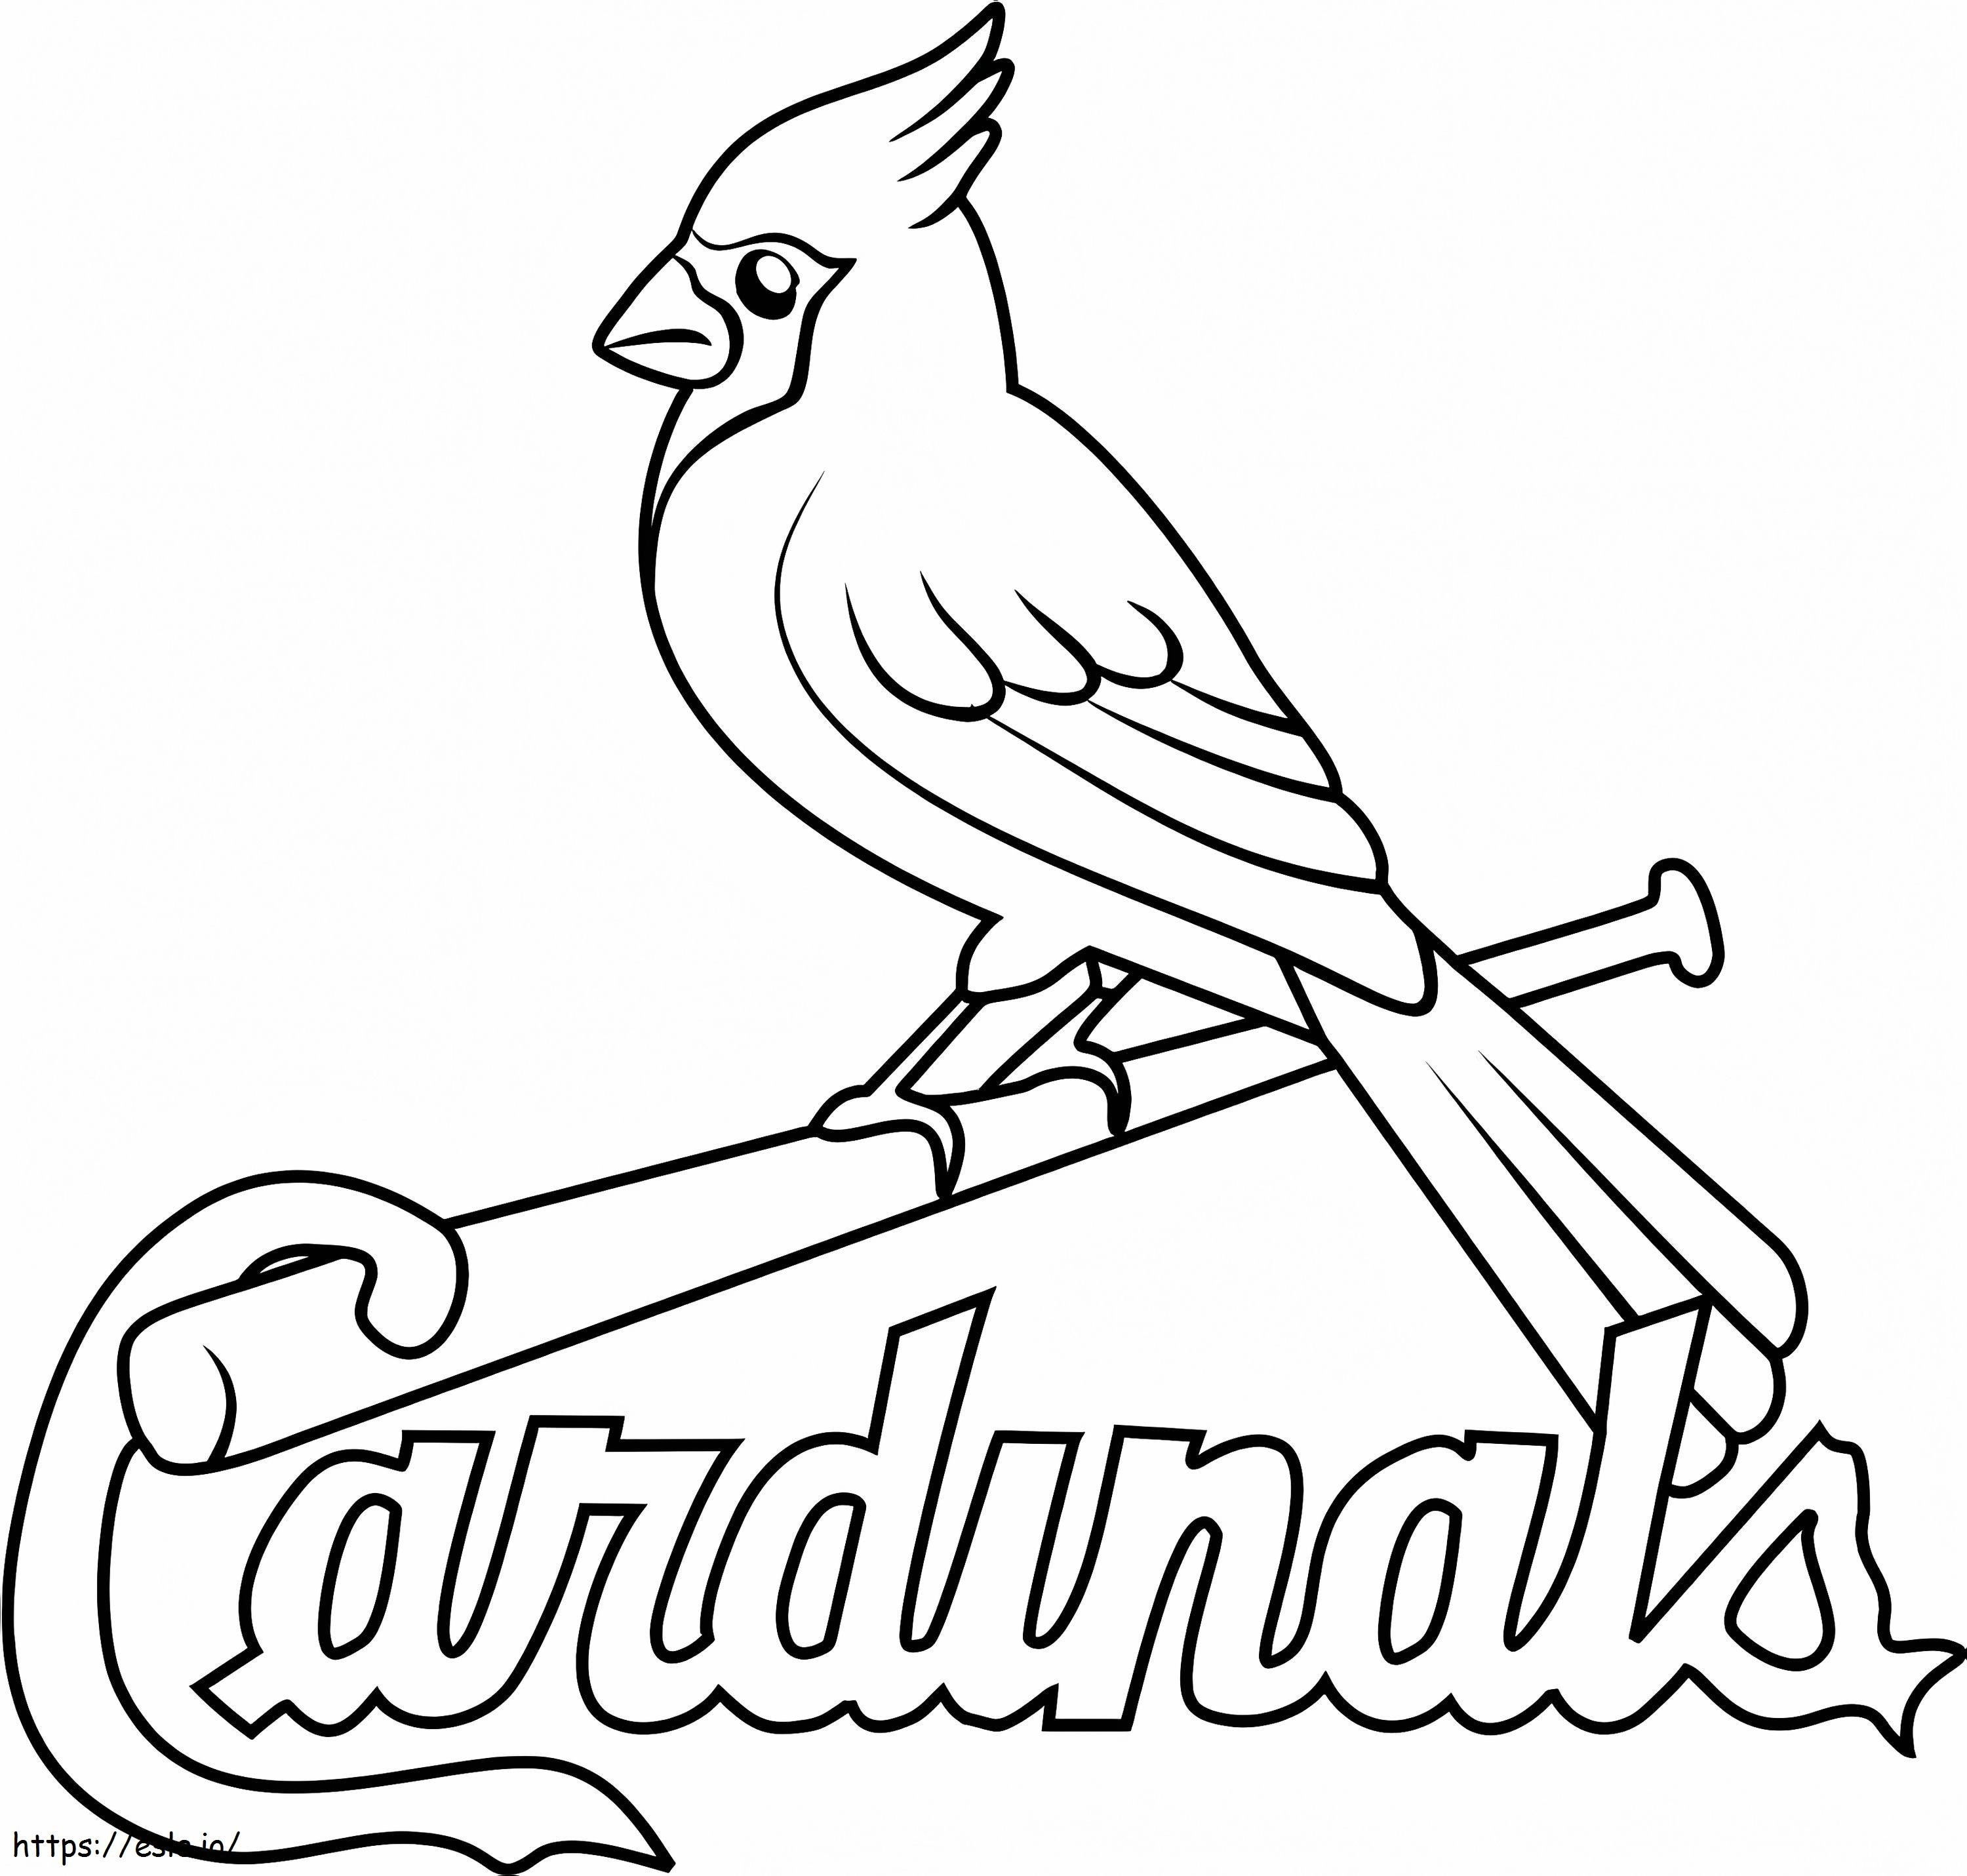 Sigla St Louis Cardinals de colorat